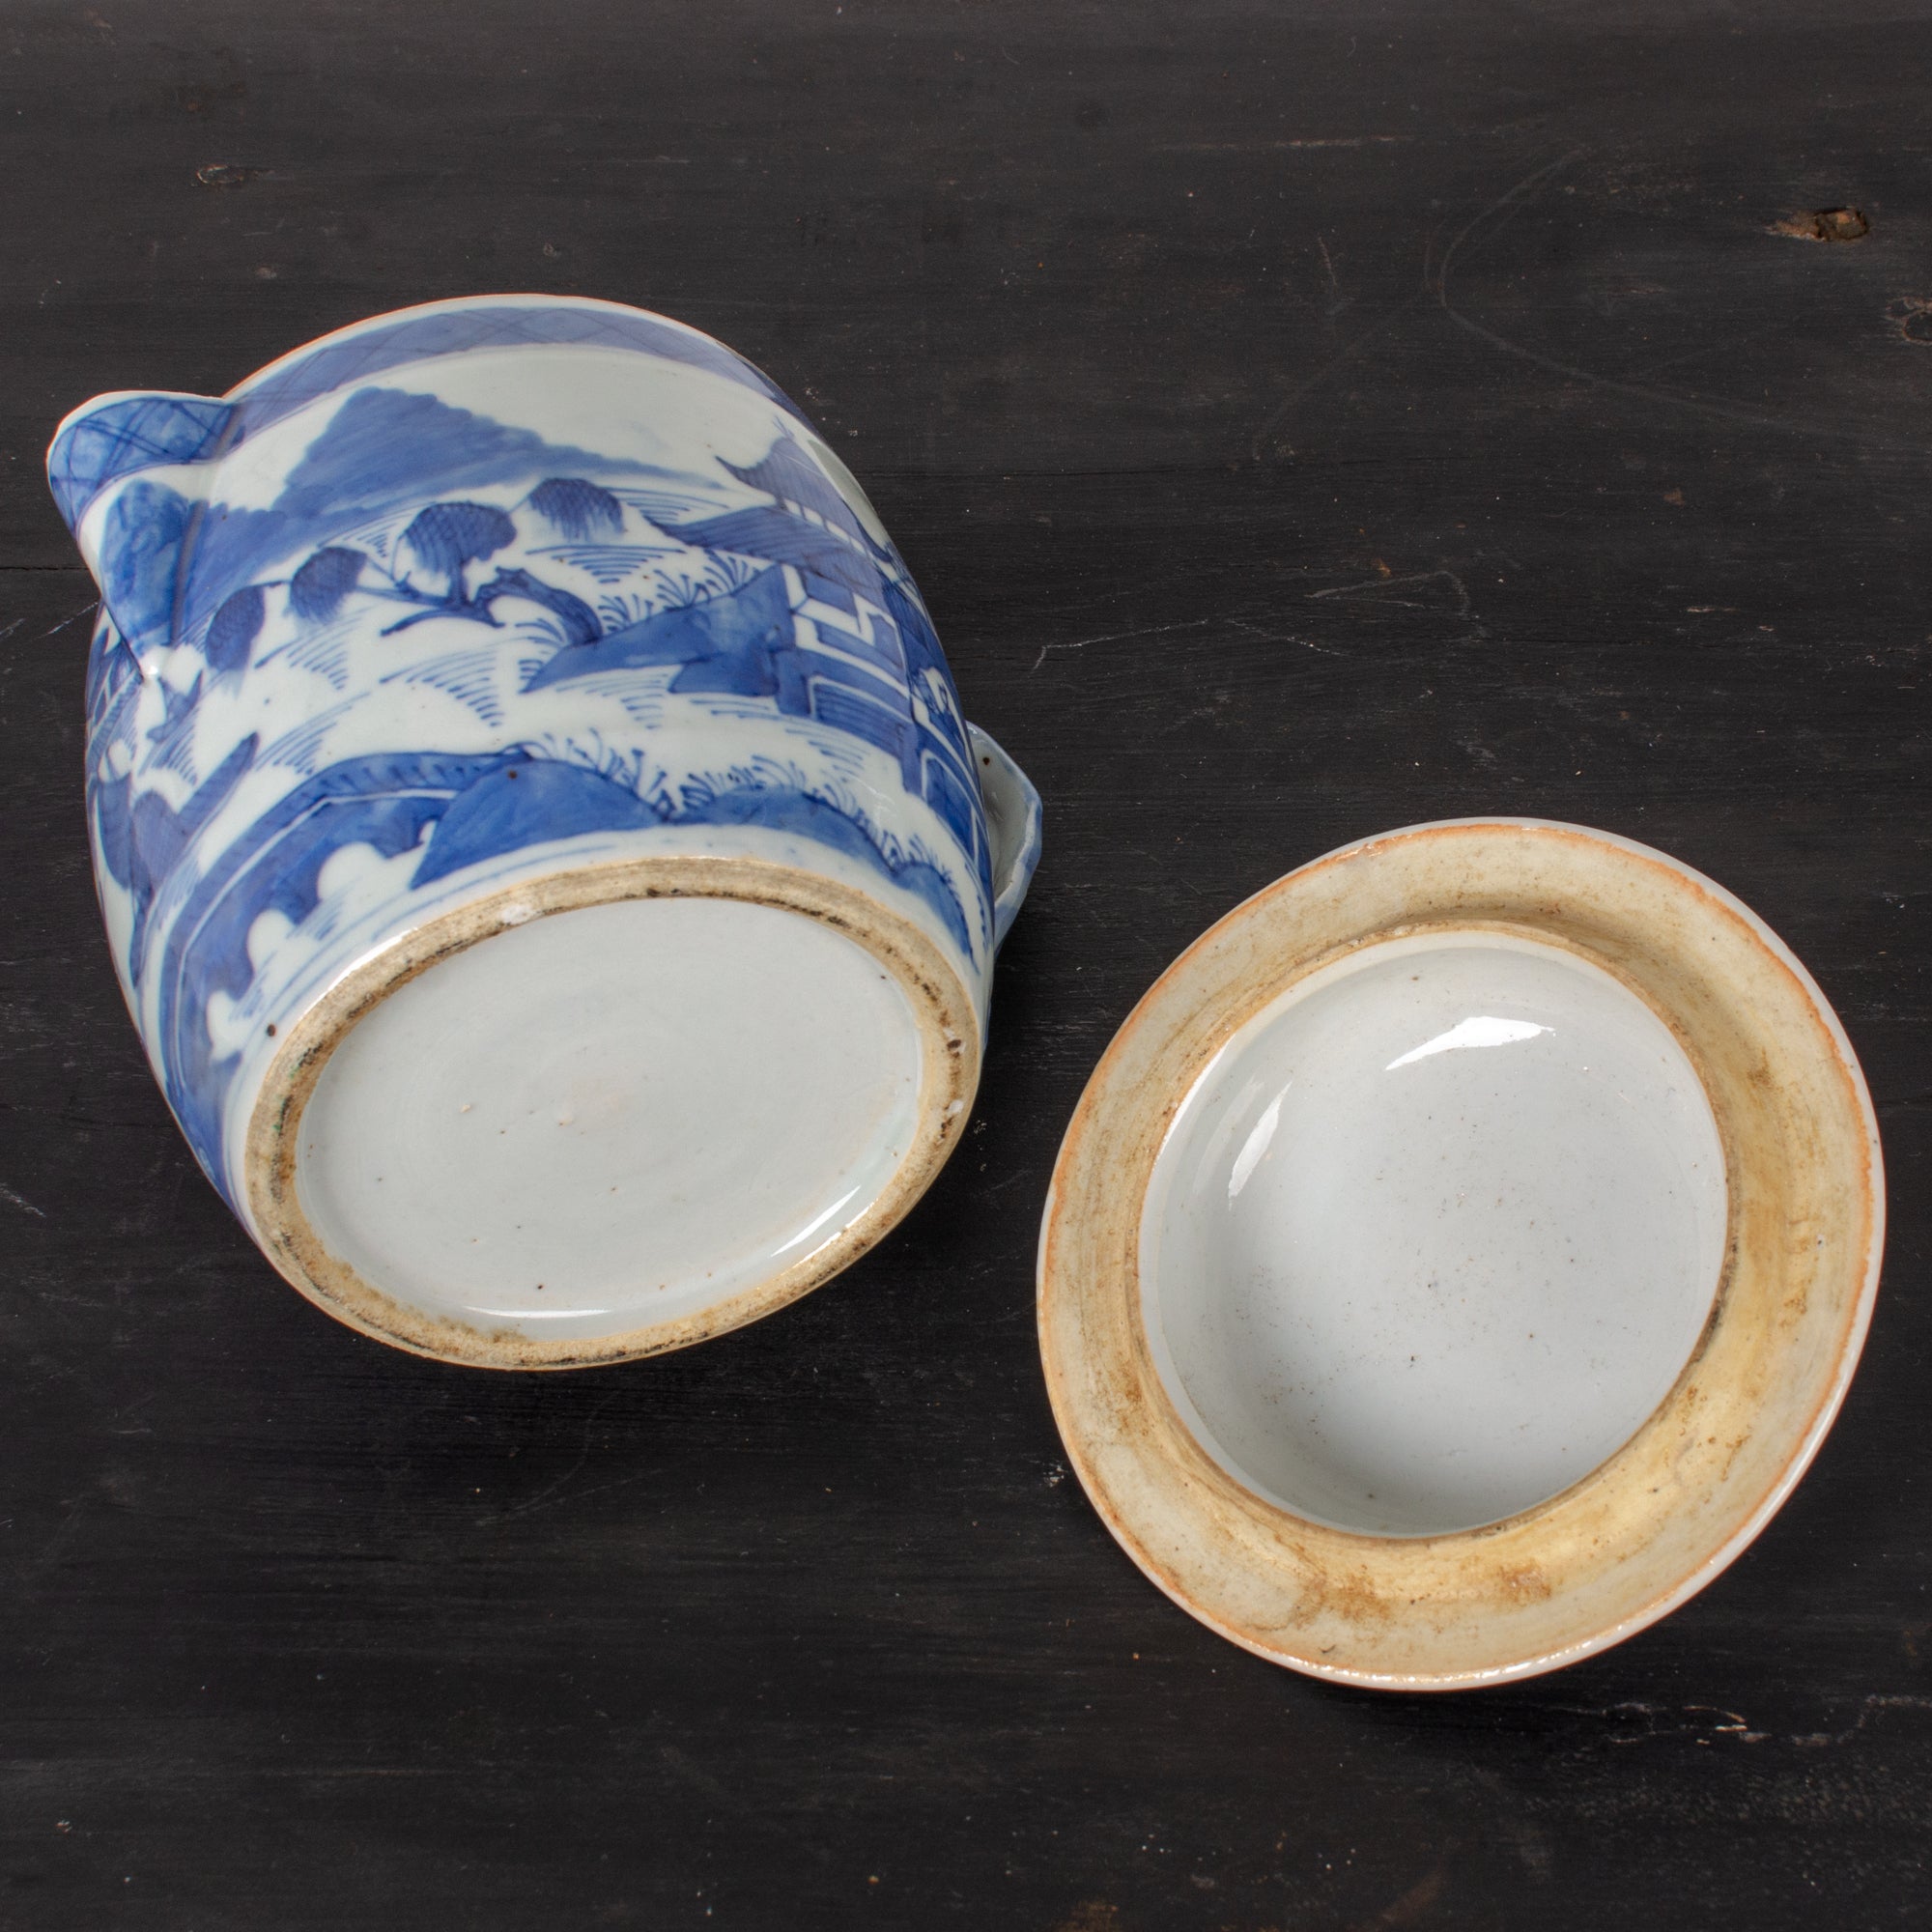 Canton Blue and White Porcelain Cider Jug, c.1830